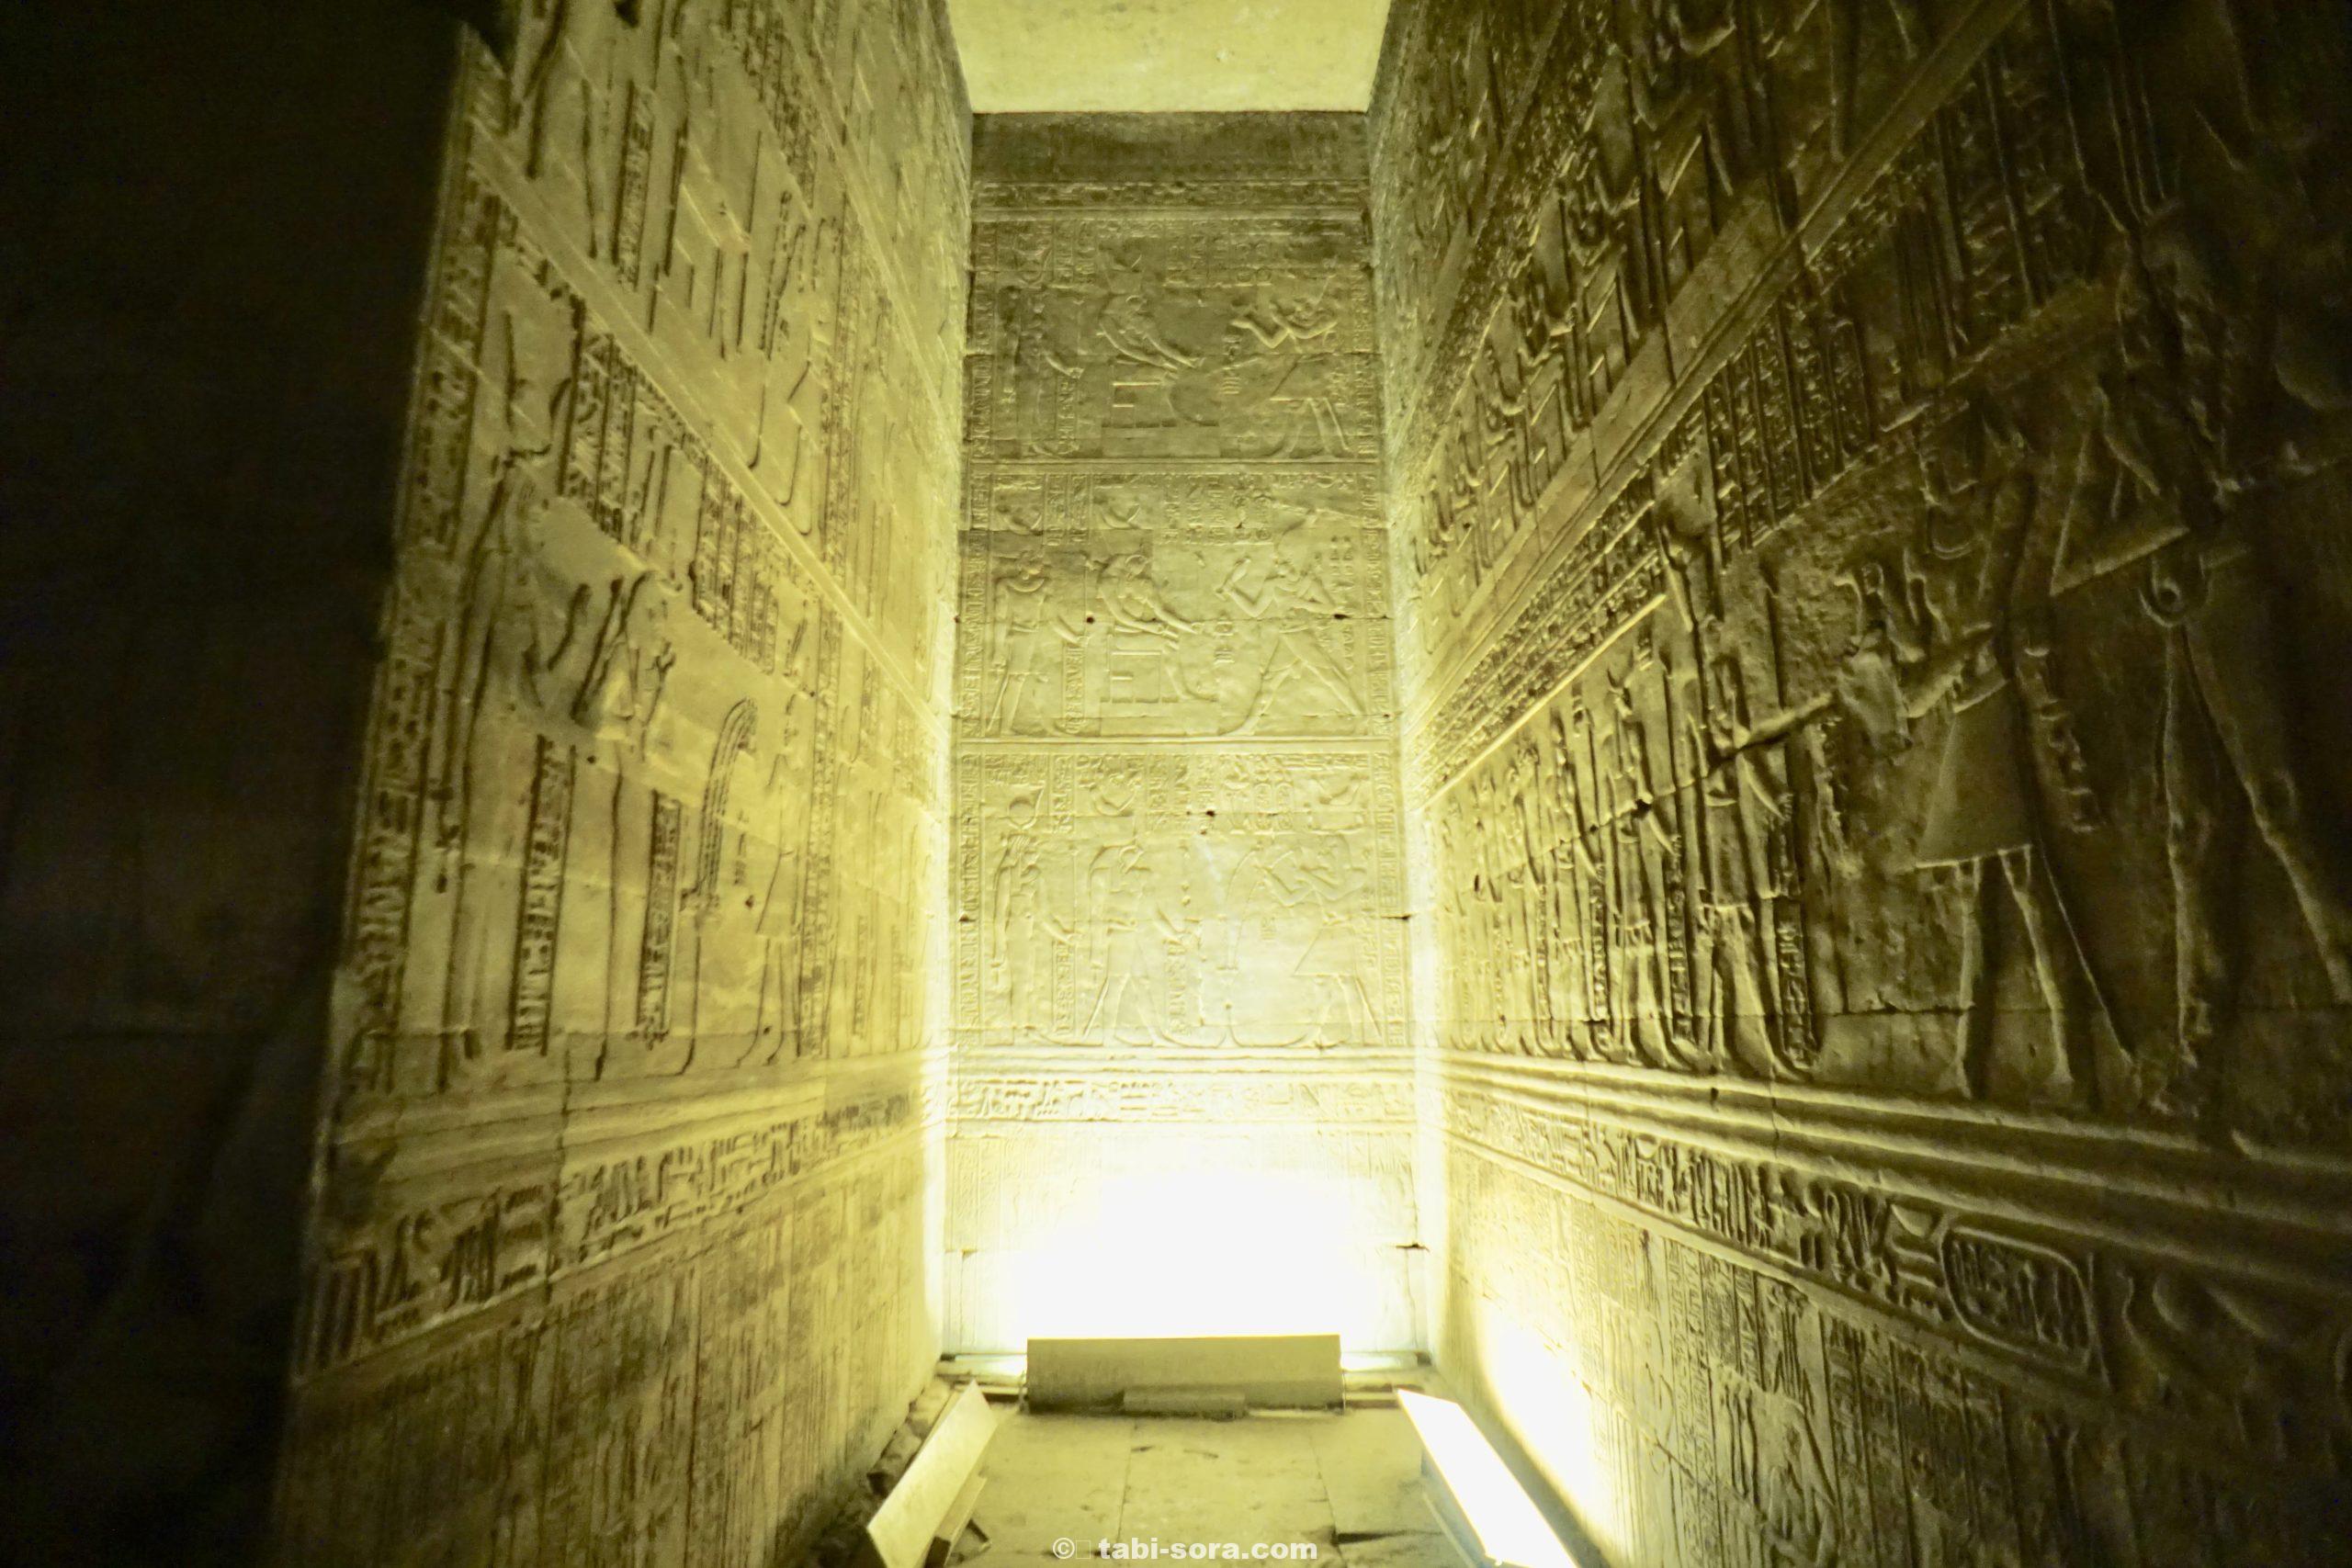 写真で巡るエジプト世界遺産の旅 ナイル川クルーズで行くエドフ神殿 旅人ライフ森の楽園